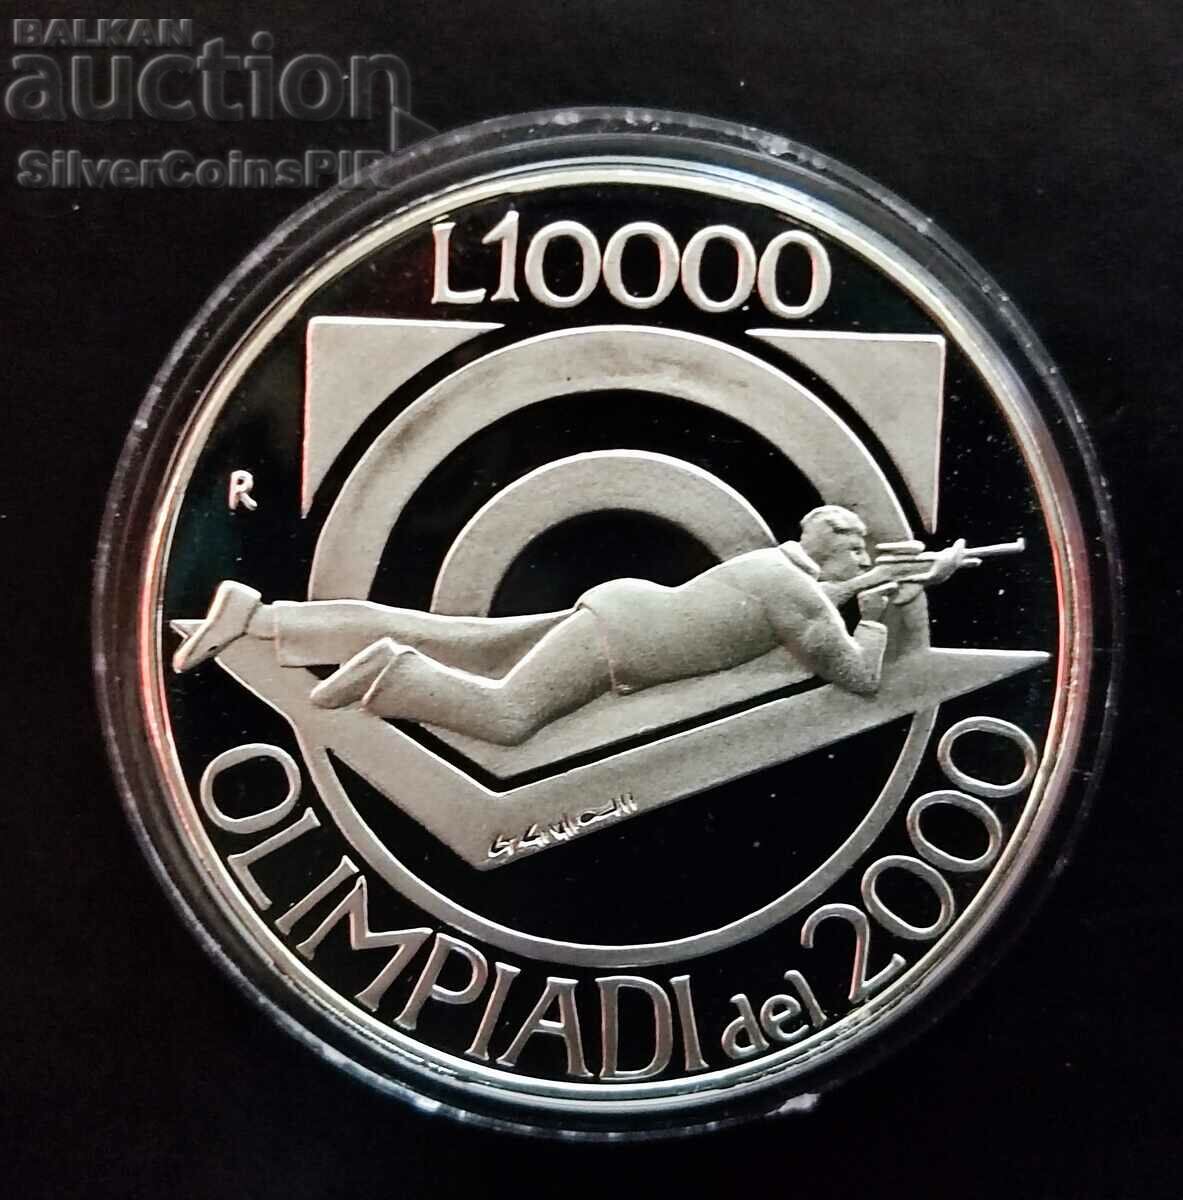 Ασημένιο 10000 Lira Σκοποβολή Ολυμπιακοί Αγώνες 1999 Σαν Μαρίνο